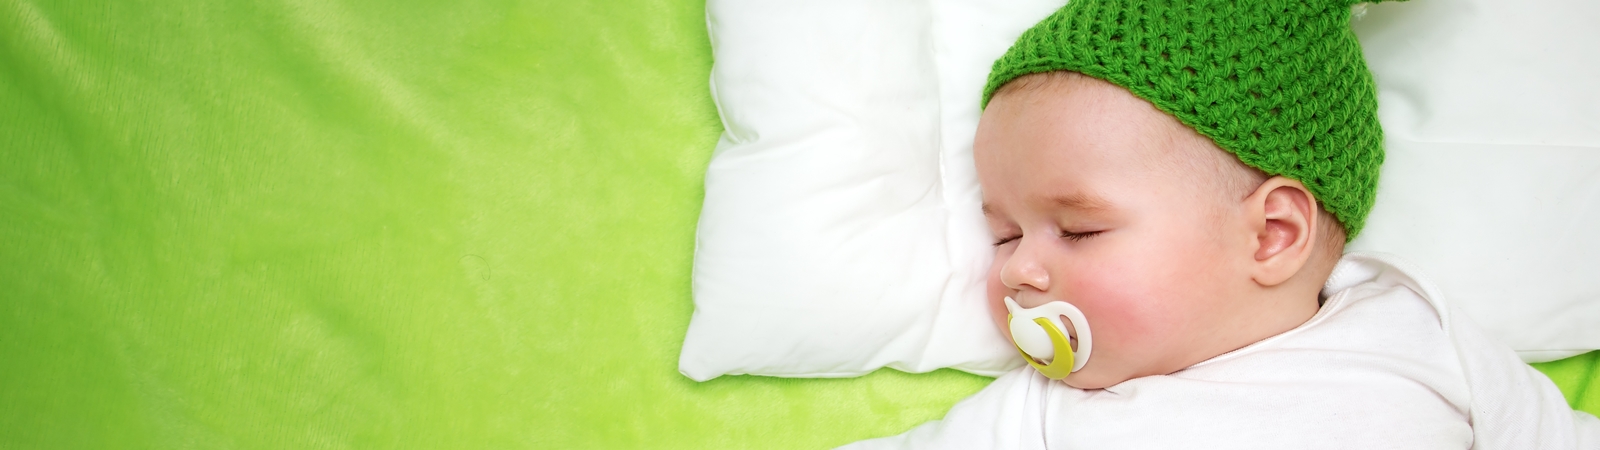 Bebeklerde Uyku Problemi: Kendiliğinden Sakinleşmeyen Bebekler